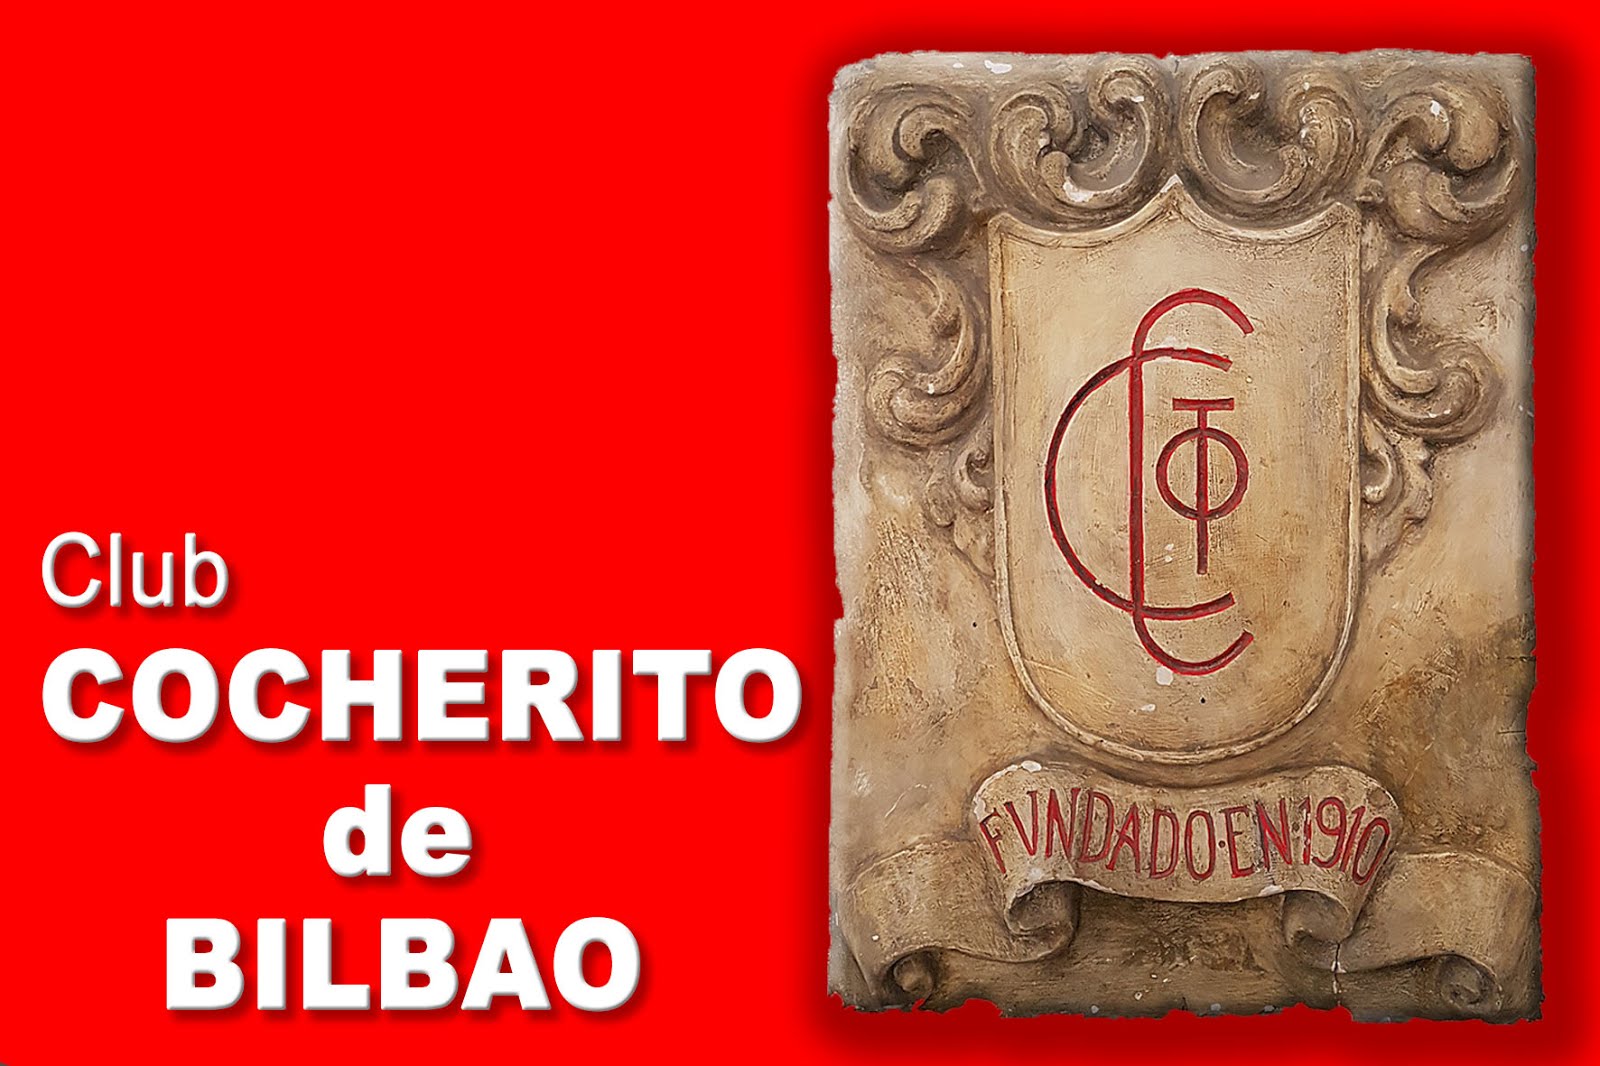 Club COCHERITO de BILBAO